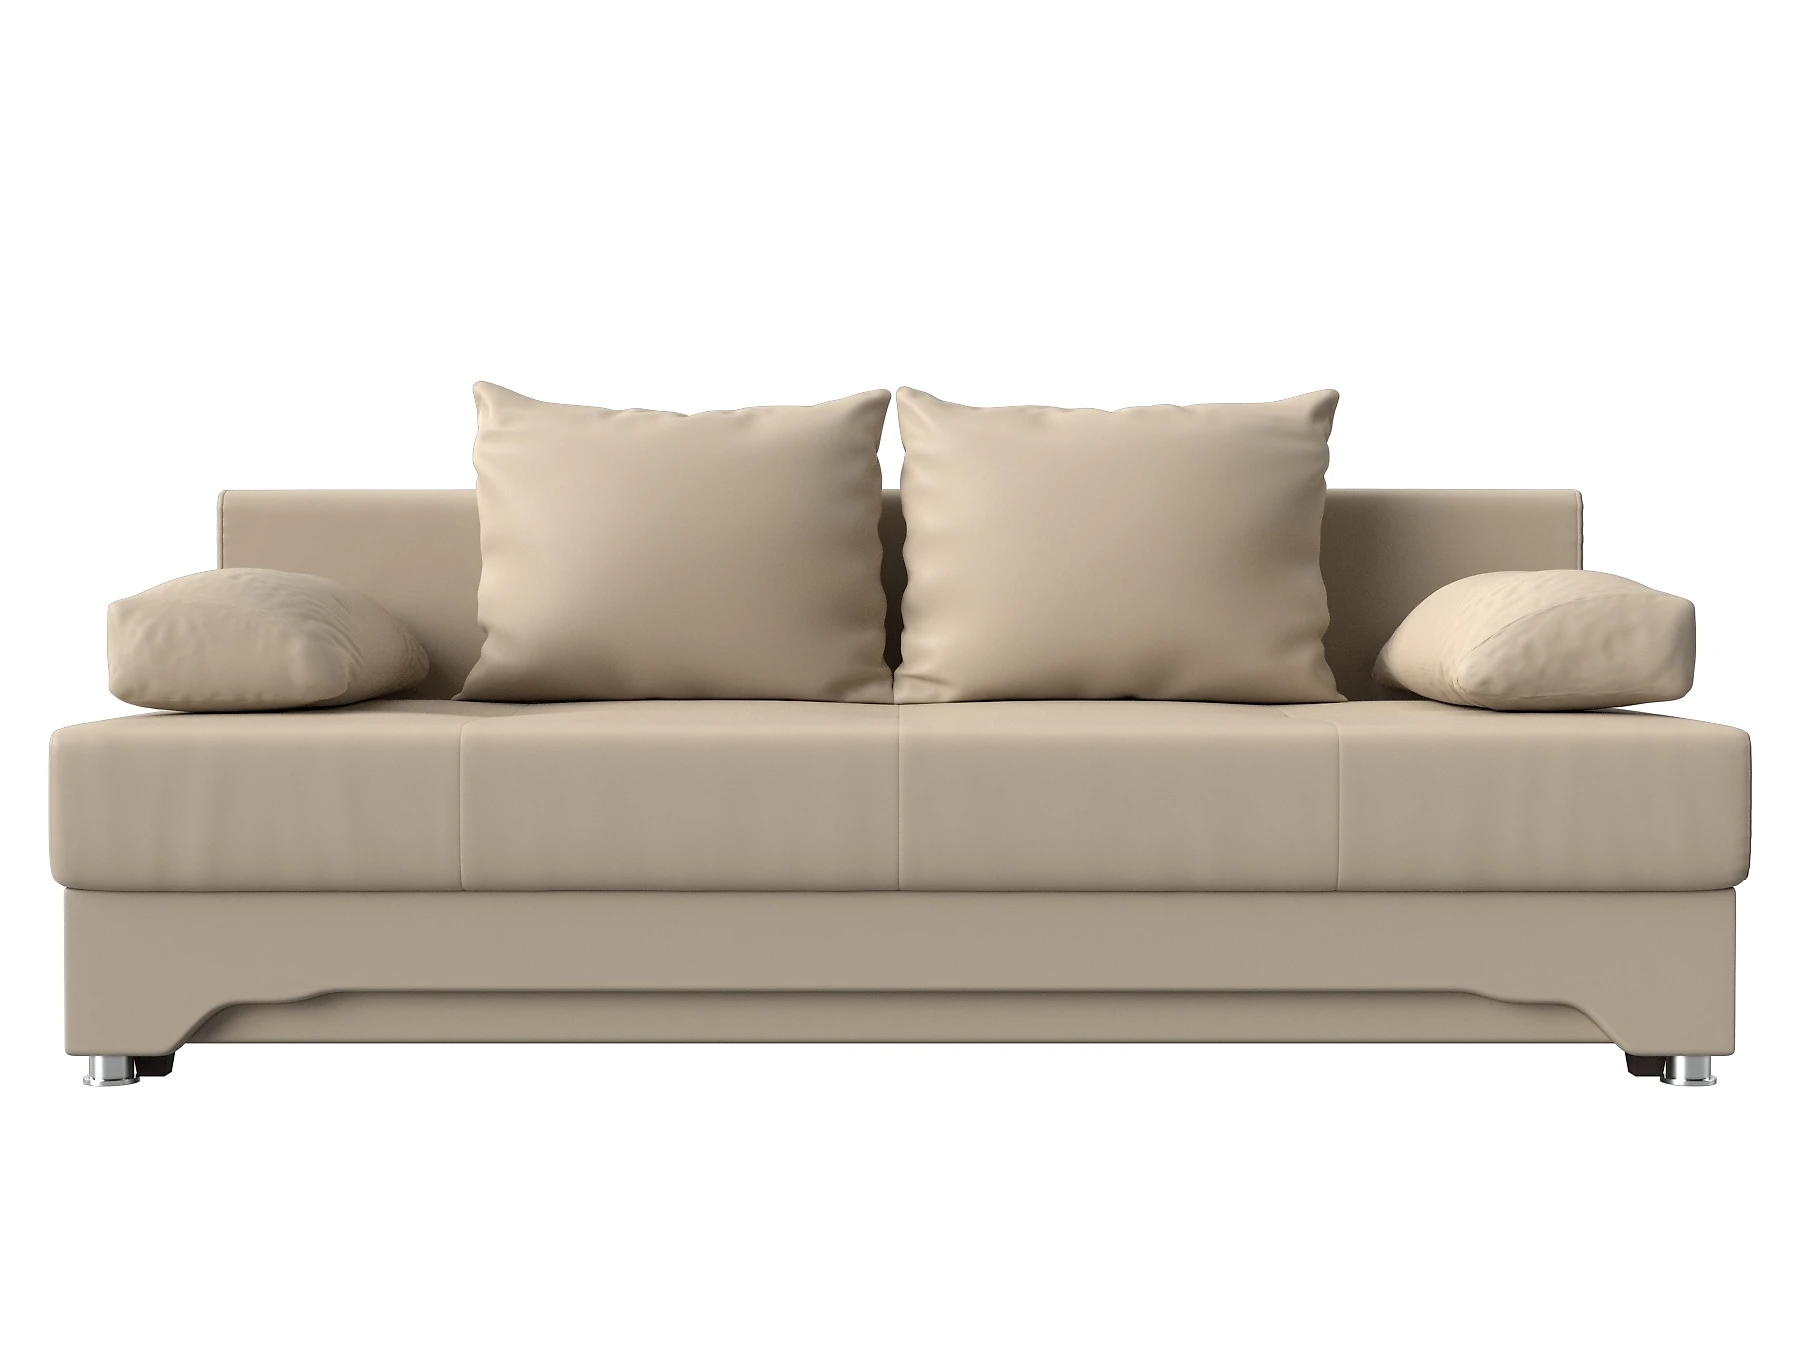  кожаный диван еврокнижка Ник-2 Дизайн 2